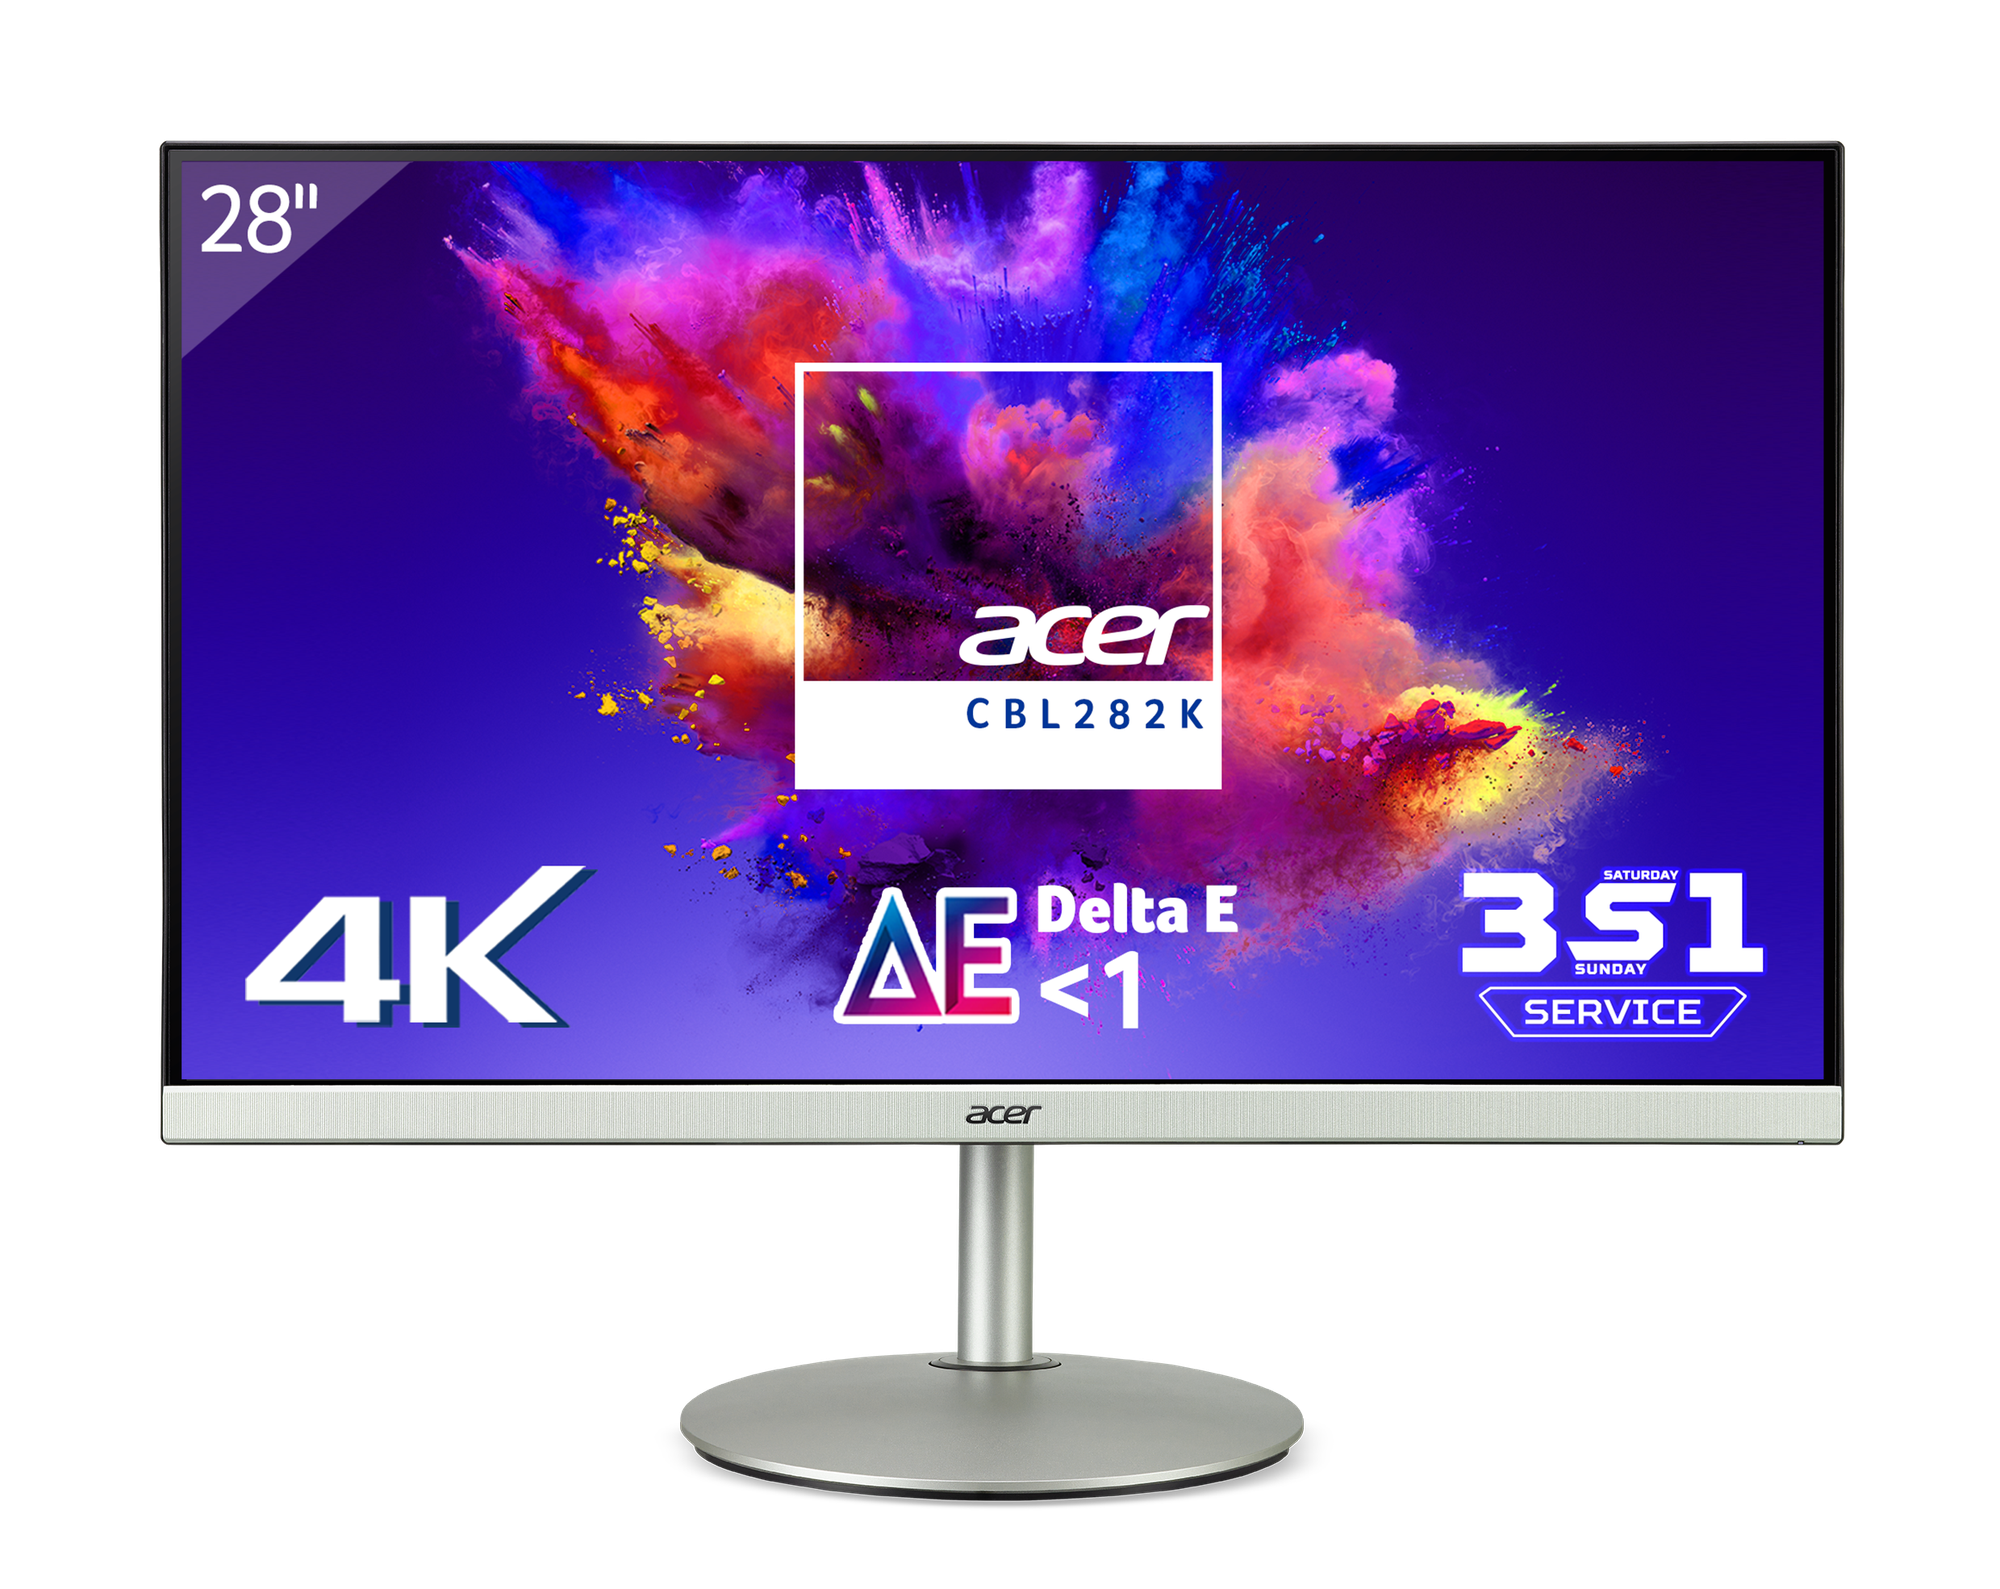 Acer ra mắt màn hình Acer CBL282K kích thước 28 inch, độ phân giải 4K, giá 9,99 triệu - Ảnh 1.